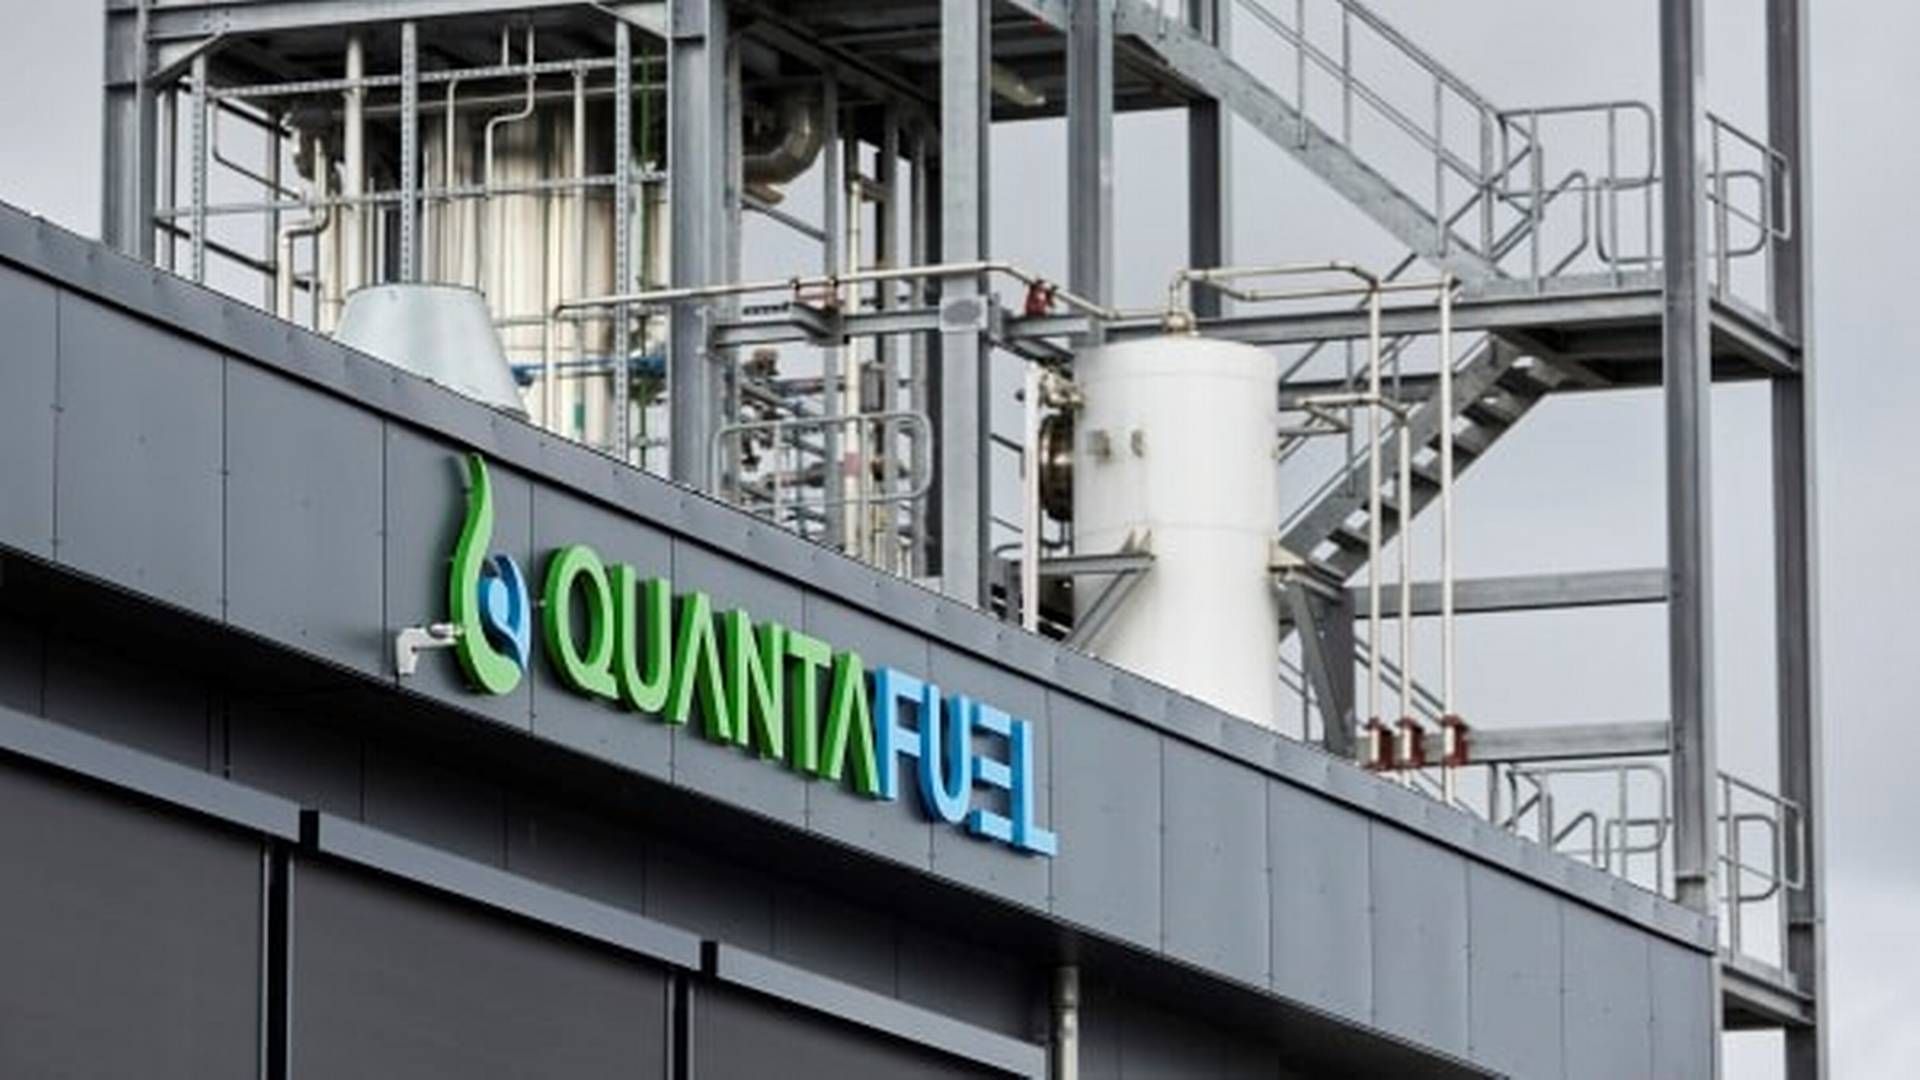 Salget af Quantafuel er endelig faldet på plads. | Foto: Quantafuel/pr